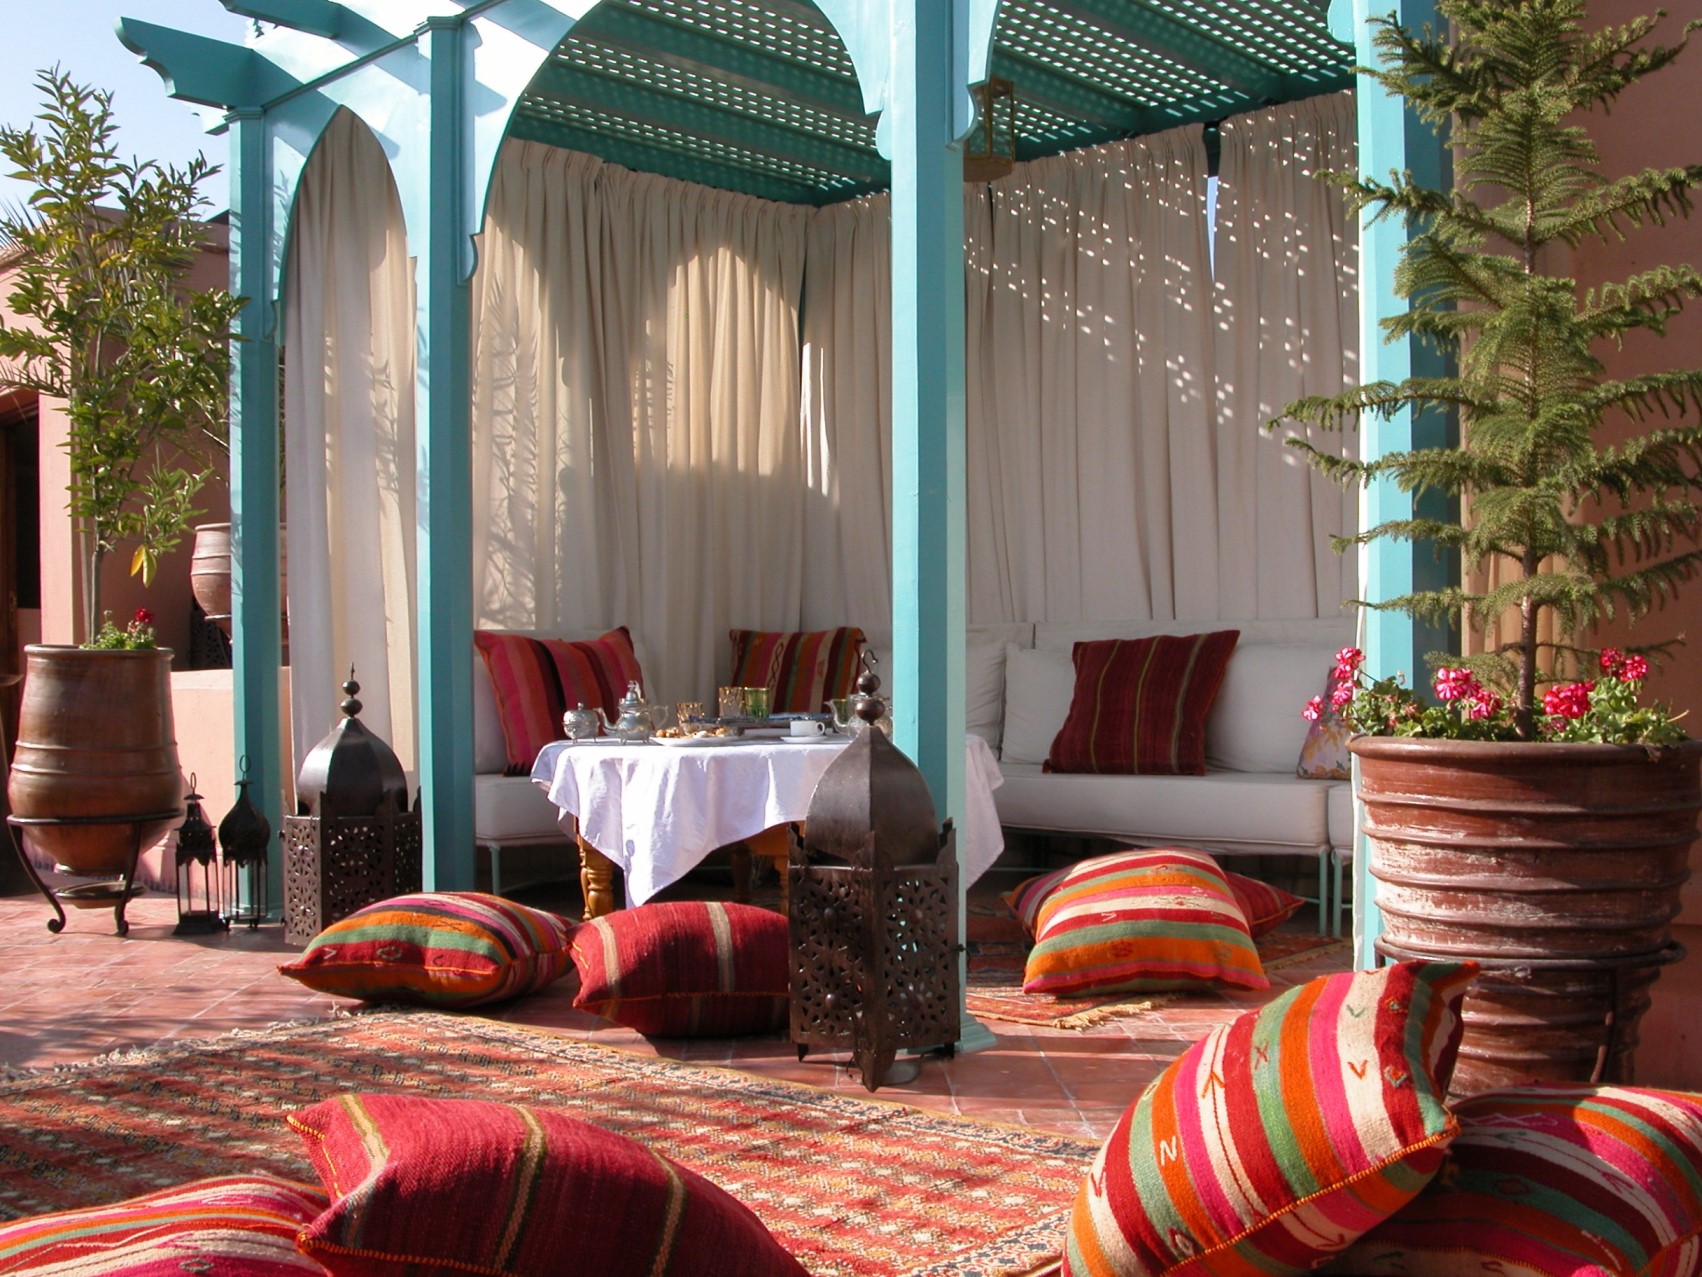 The terrace at Riad Kniza